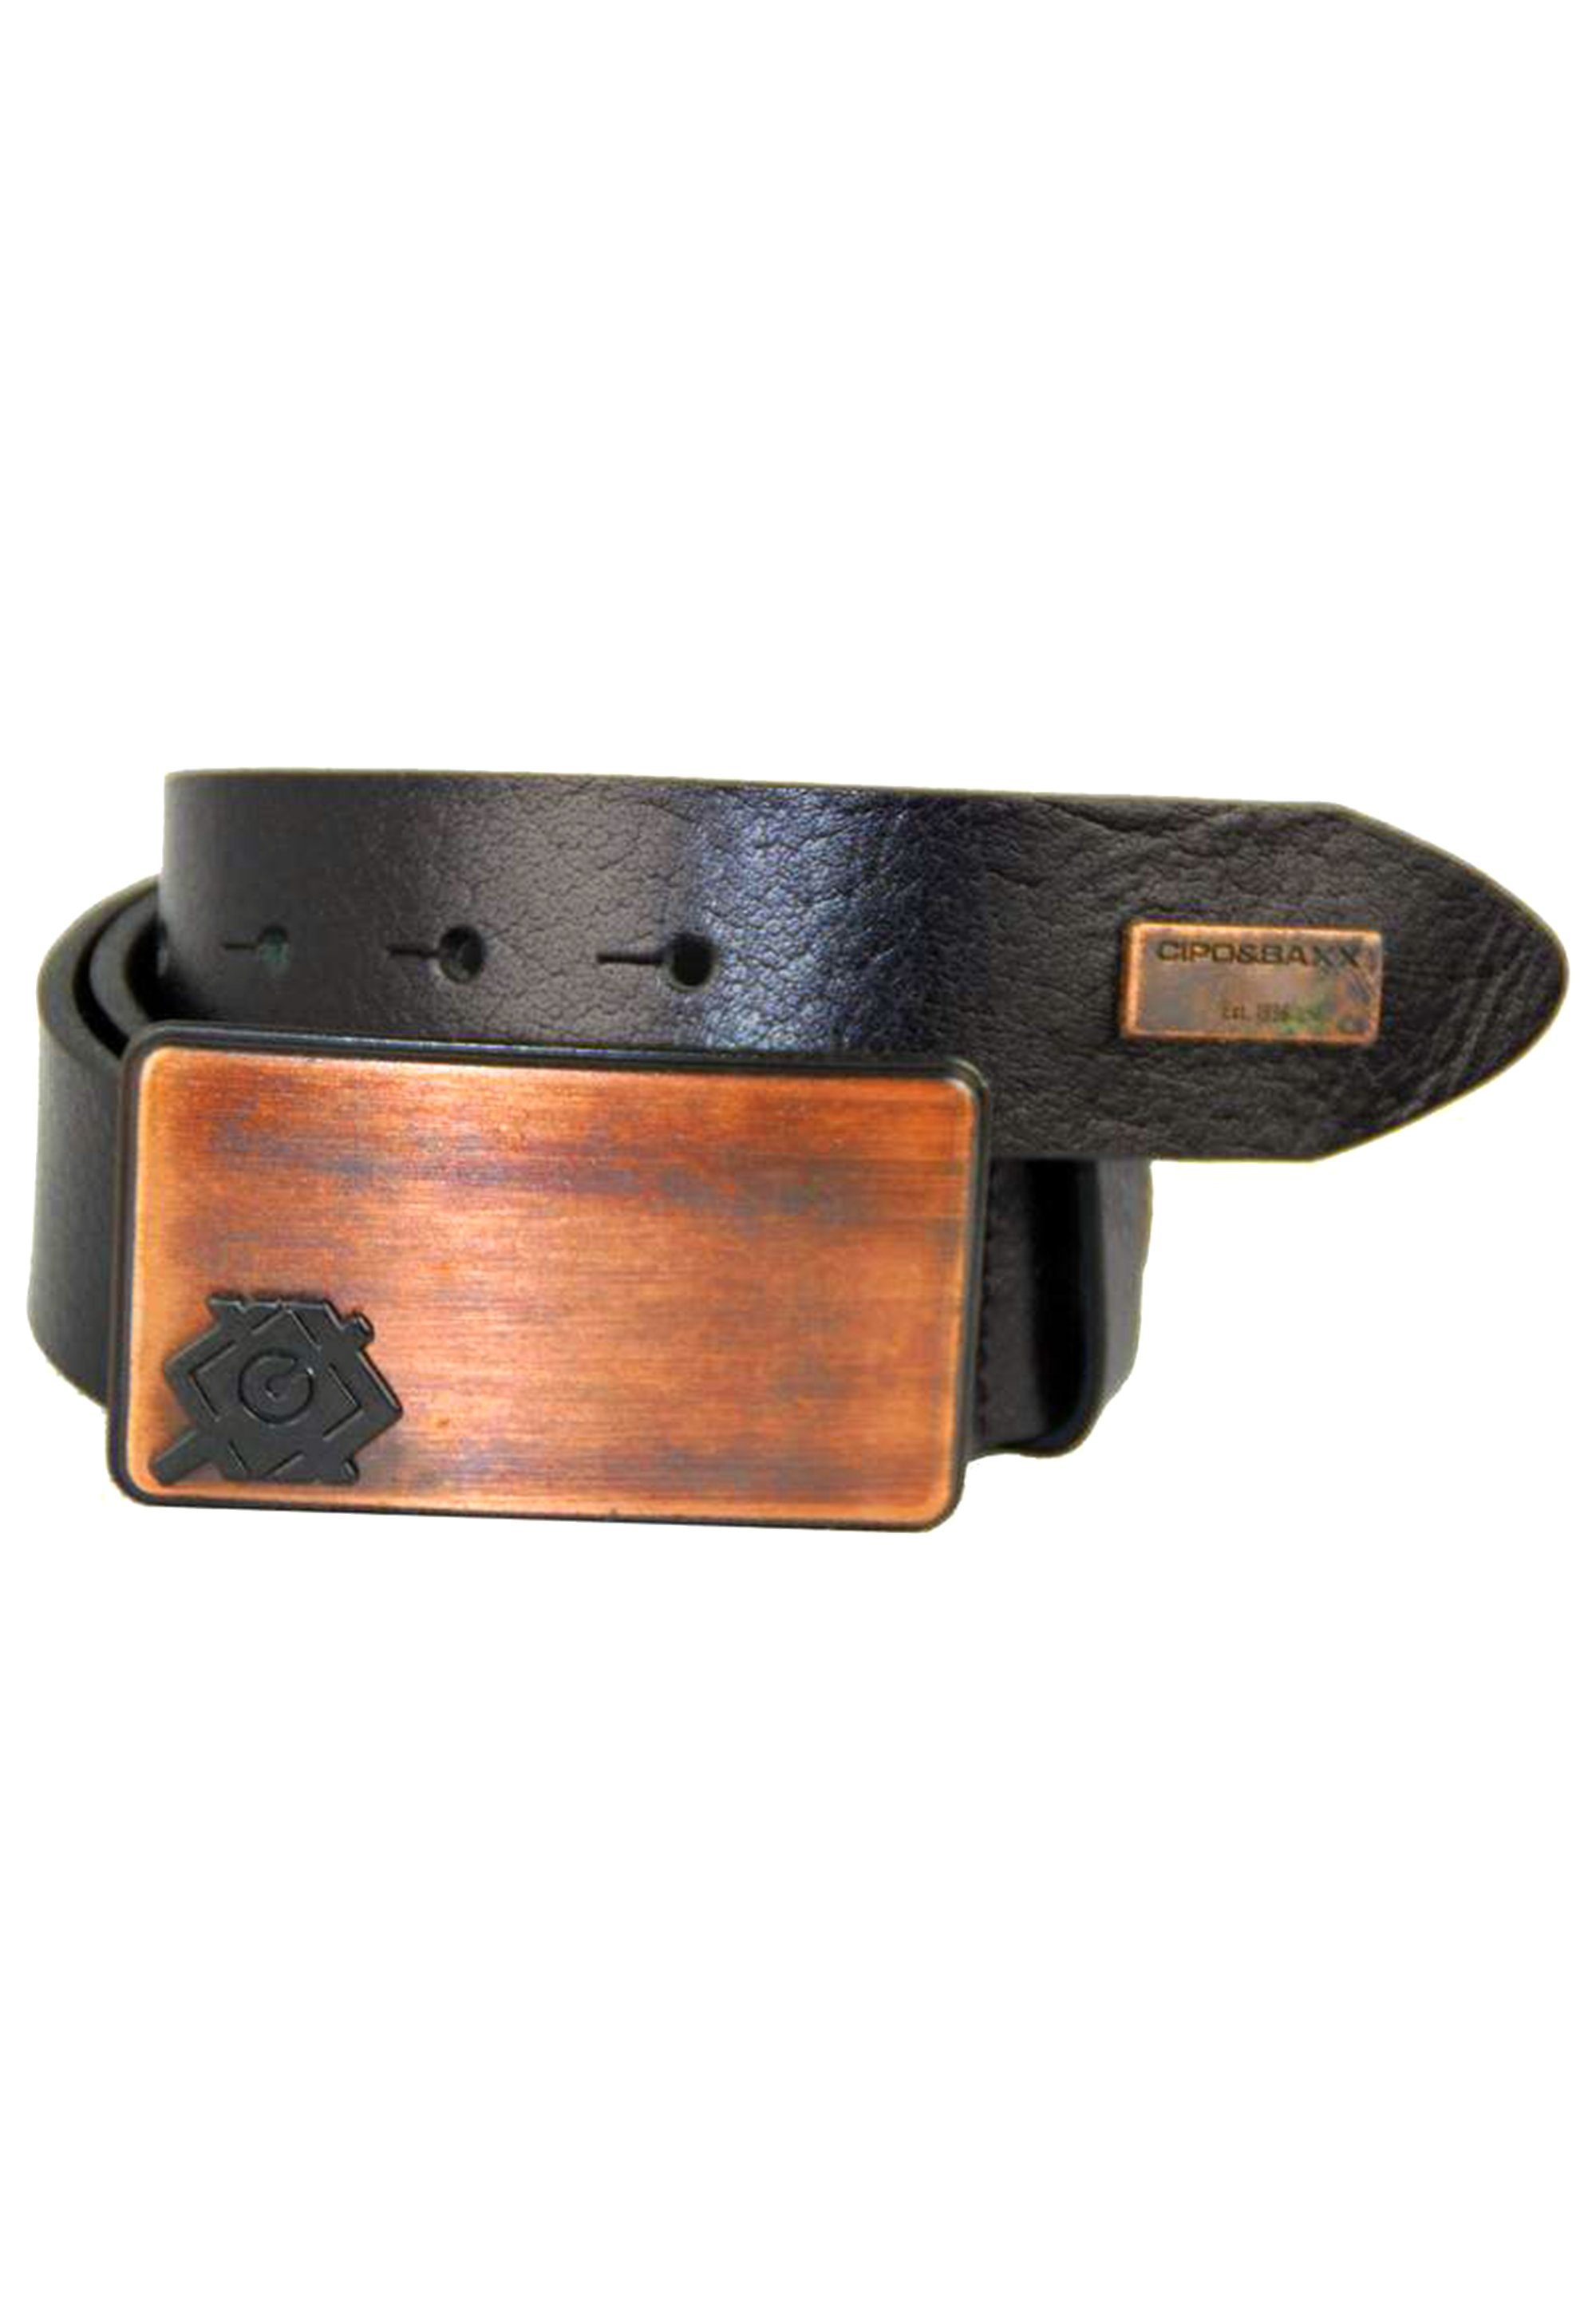 Cipo & Baxx Ledergürtel mit schwarz stylischer Metallschnalle